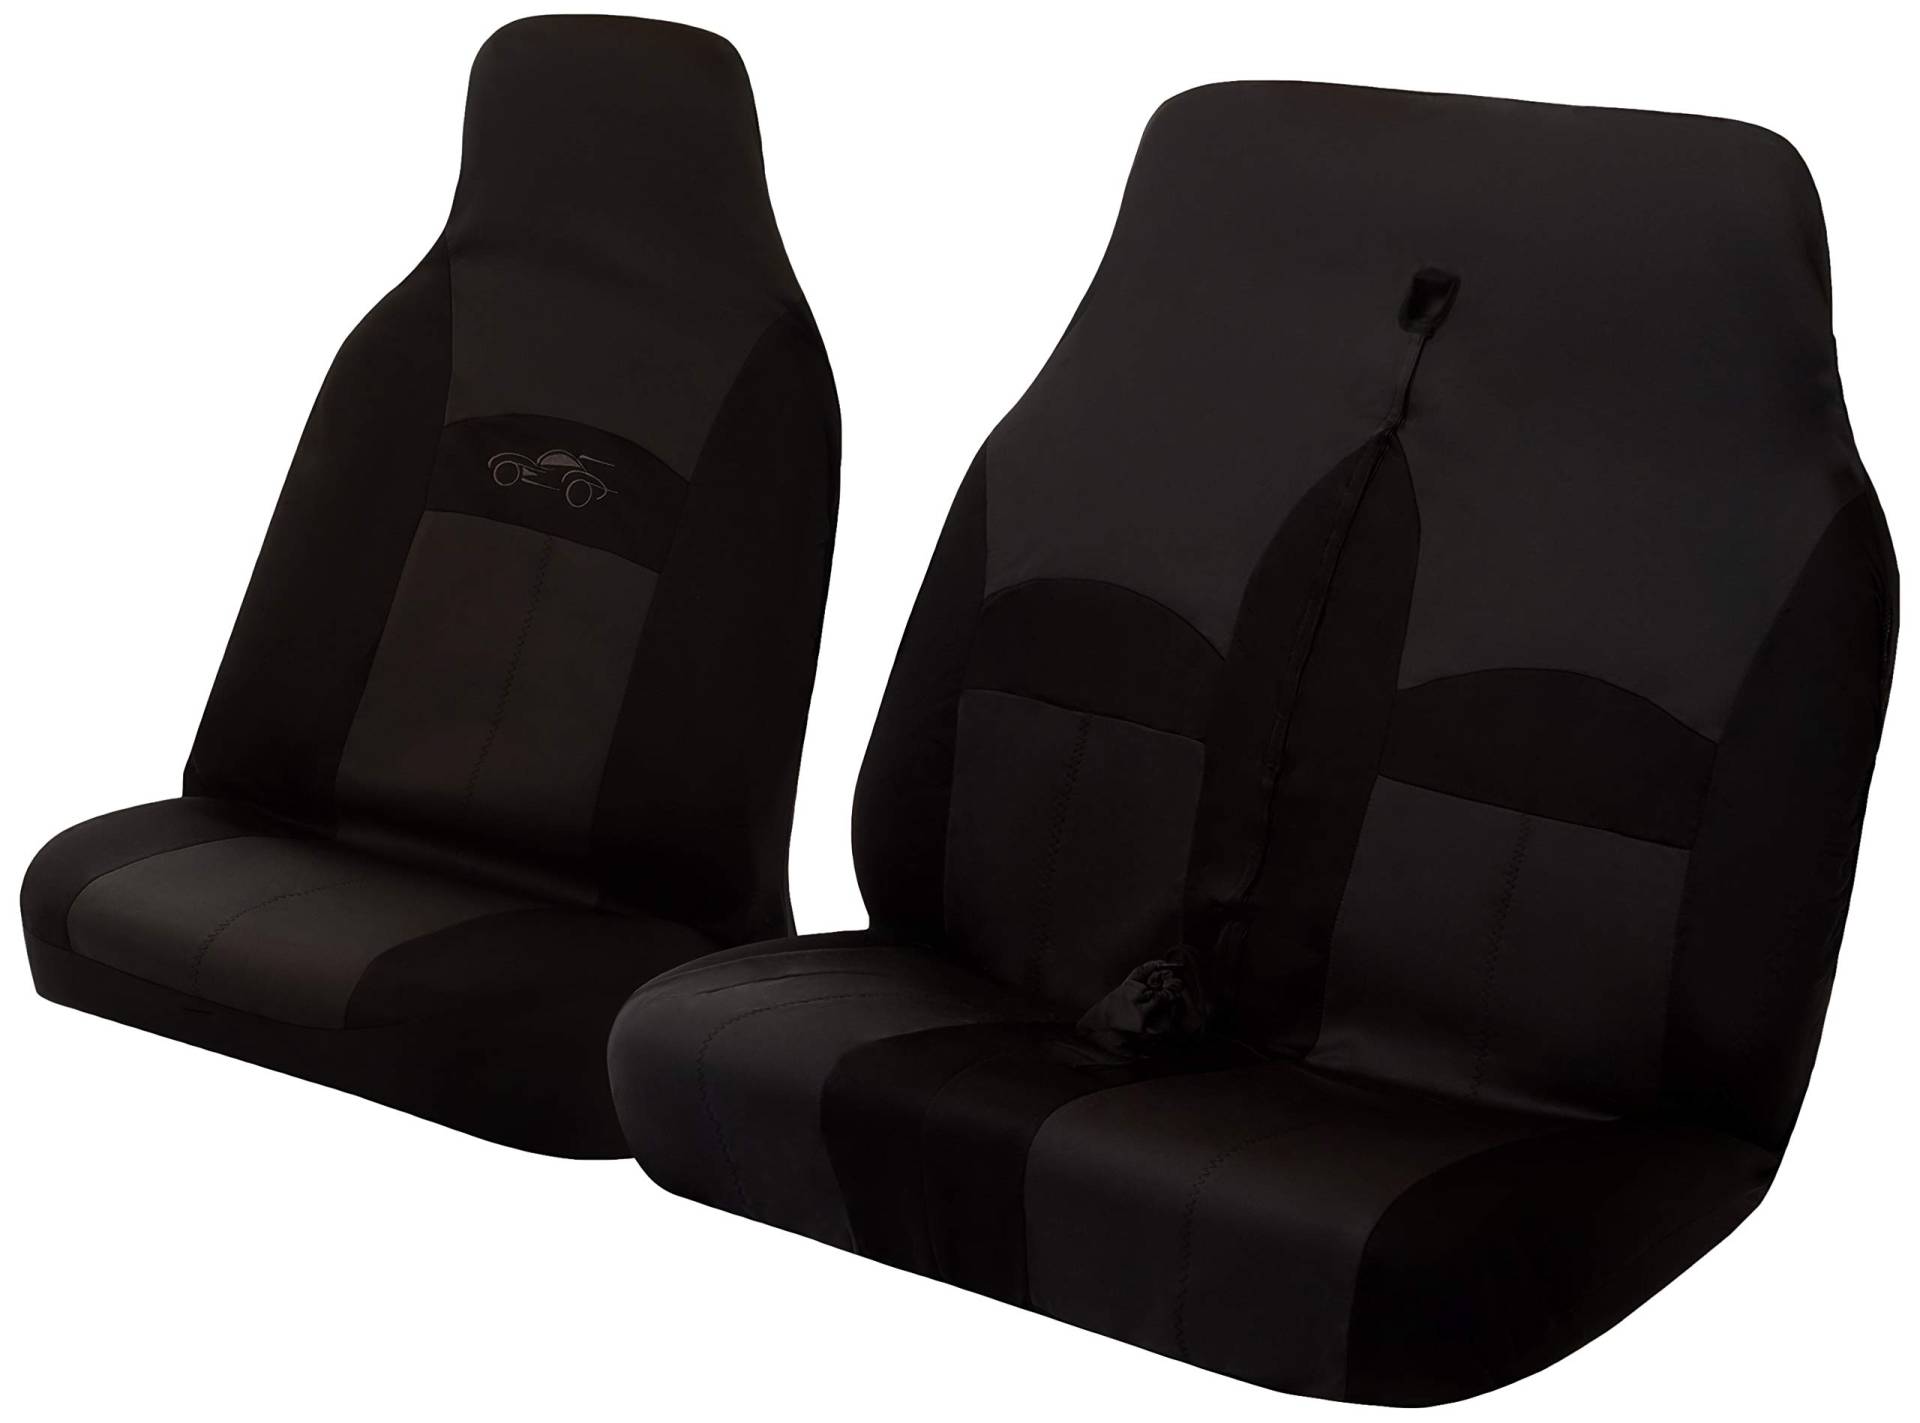 Cosmos Commercial Front Pair Sitzbezüge Single Driver und Double Passenger Covers mit Kopfstütze Covers Einfache Installation, Grau / Schwarz Farbe, 14022 Celsius von Cosmos